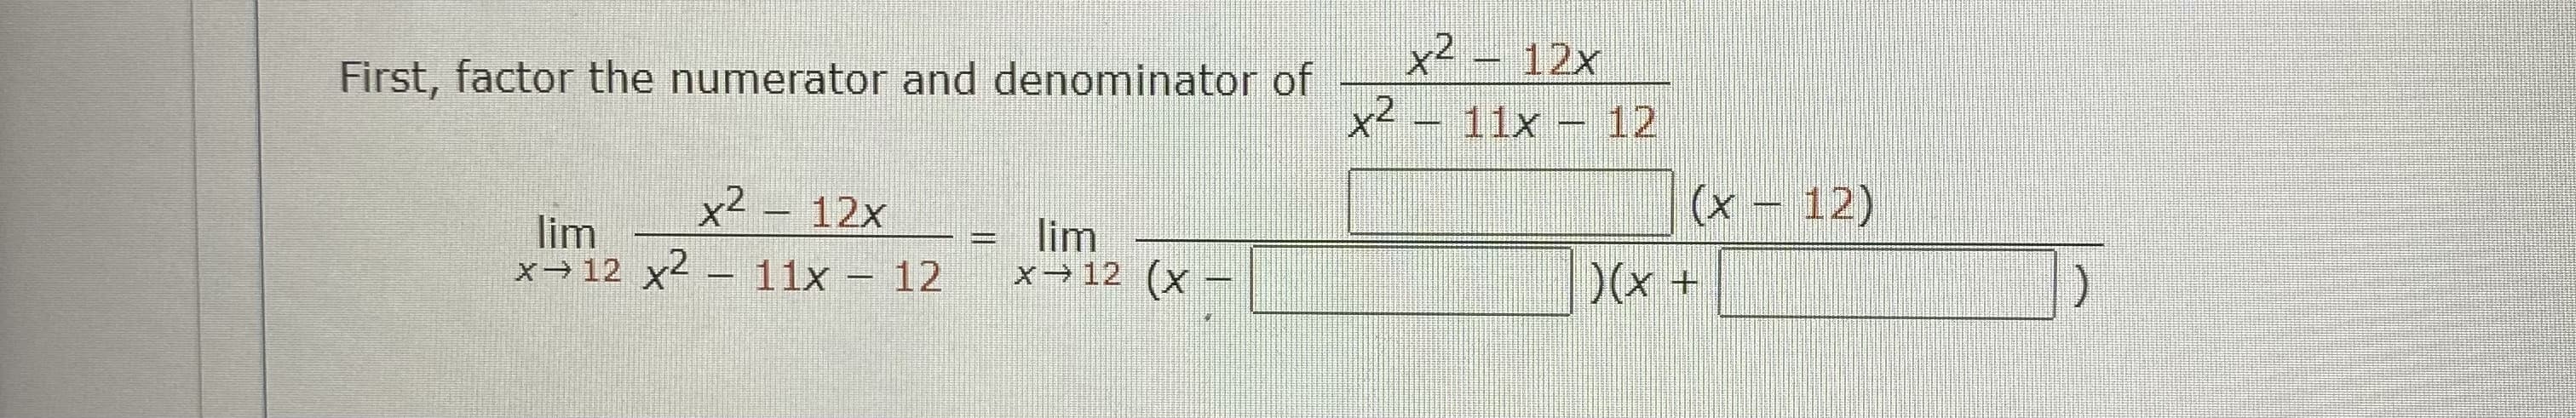 x² – 12x
First, factor the numerator and denominator of
11x
12
x² – 12x
(x – 12)
lim
x 12 x2
lim
x→12 (x
11x - 12
)(x+
|
